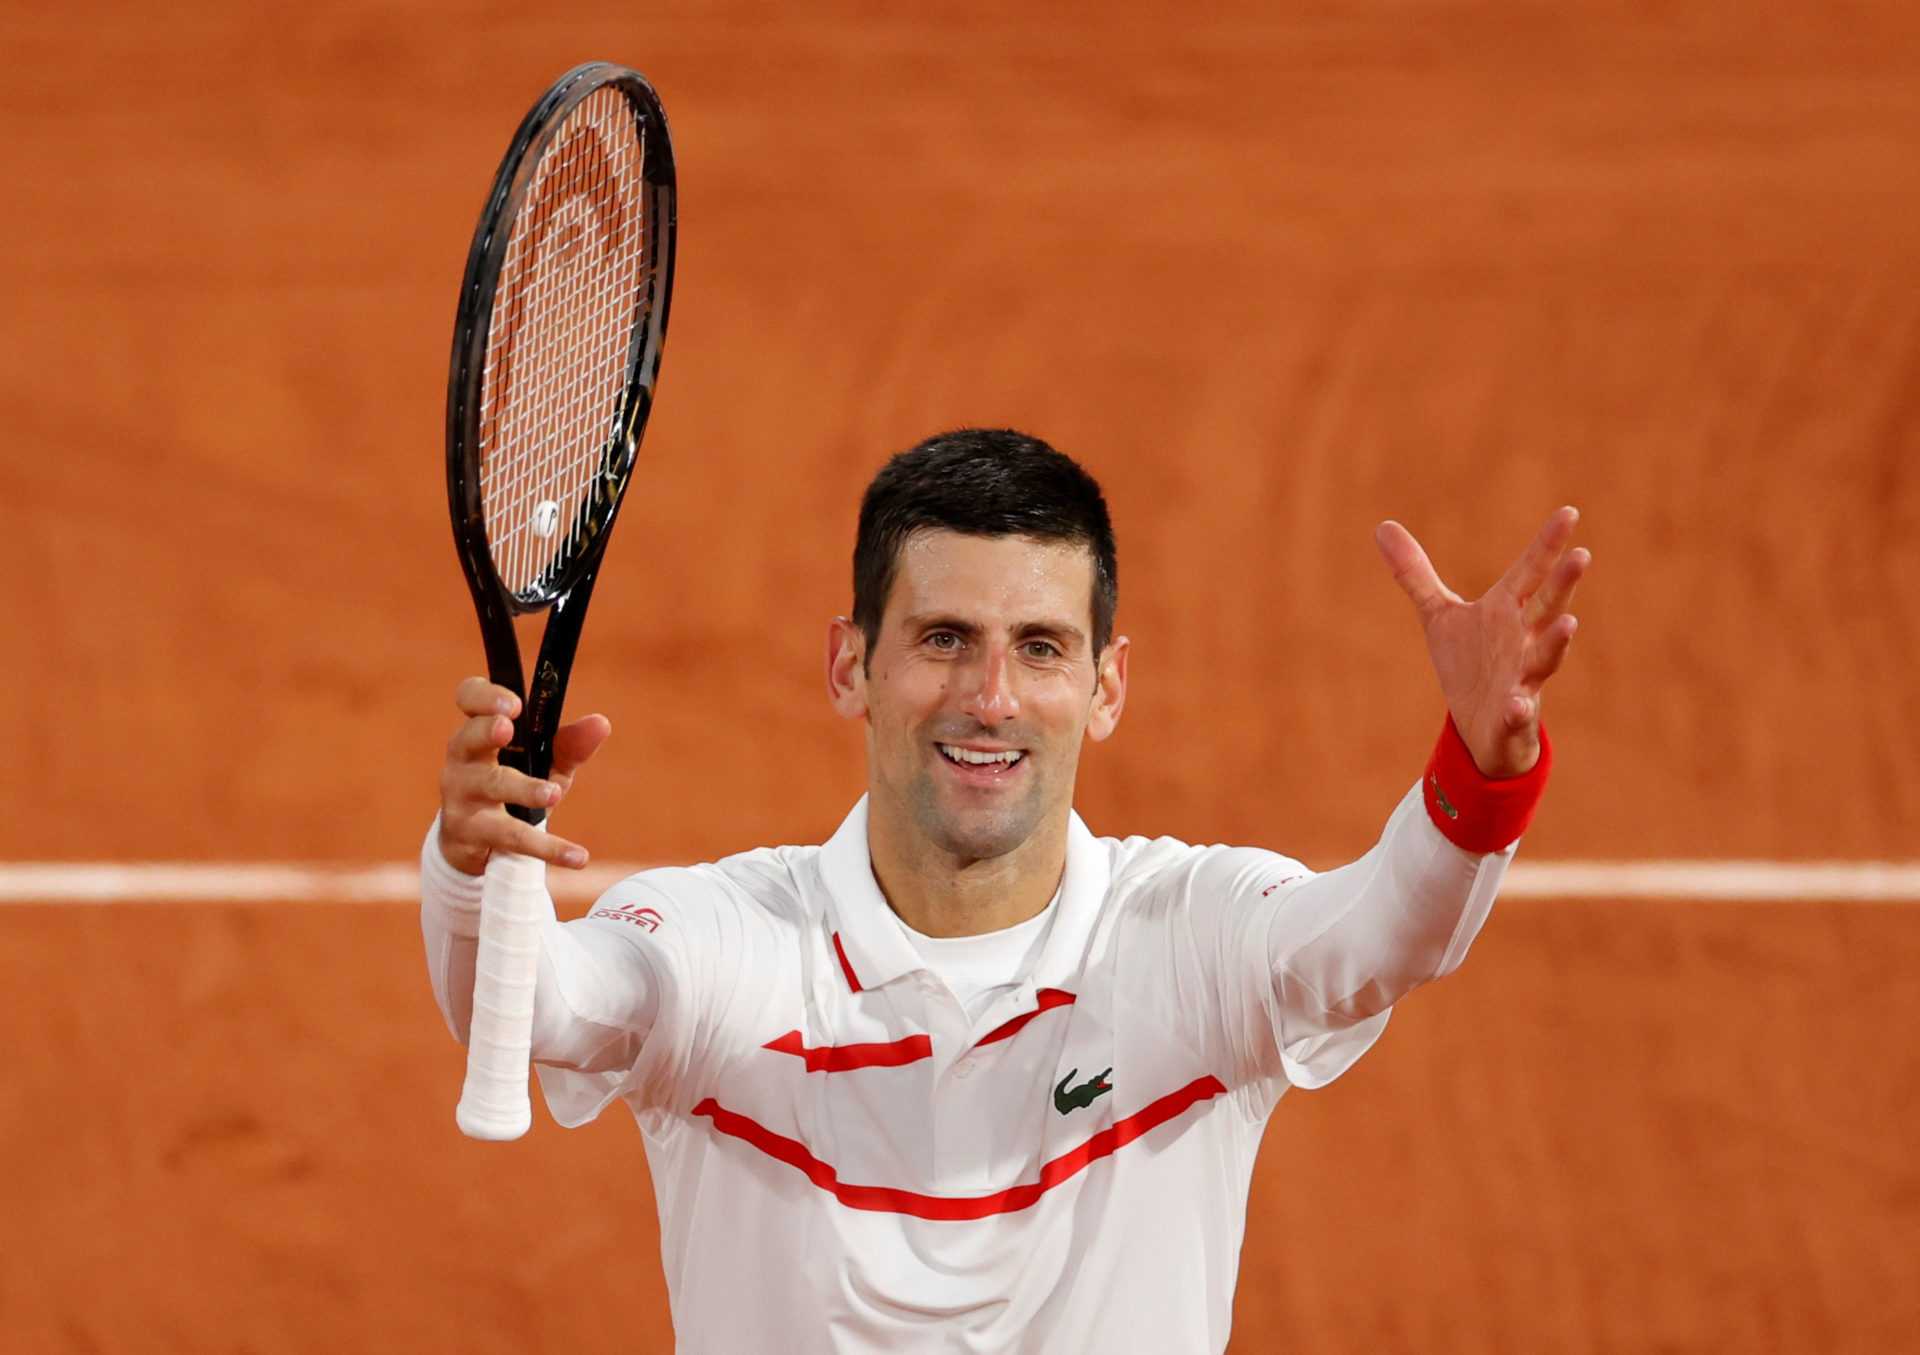 «Qui jouez-vous ensuite?»: Novak Djokovic a des plaisanteries amusantes avec Karen Khachanov avant leur affrontement à Roland-Garros 2020